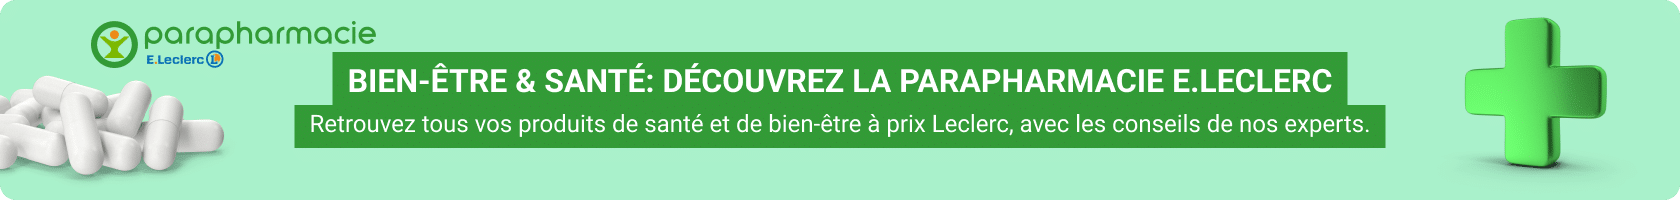 Bannière de présentation de la parapharmacie carcassonne